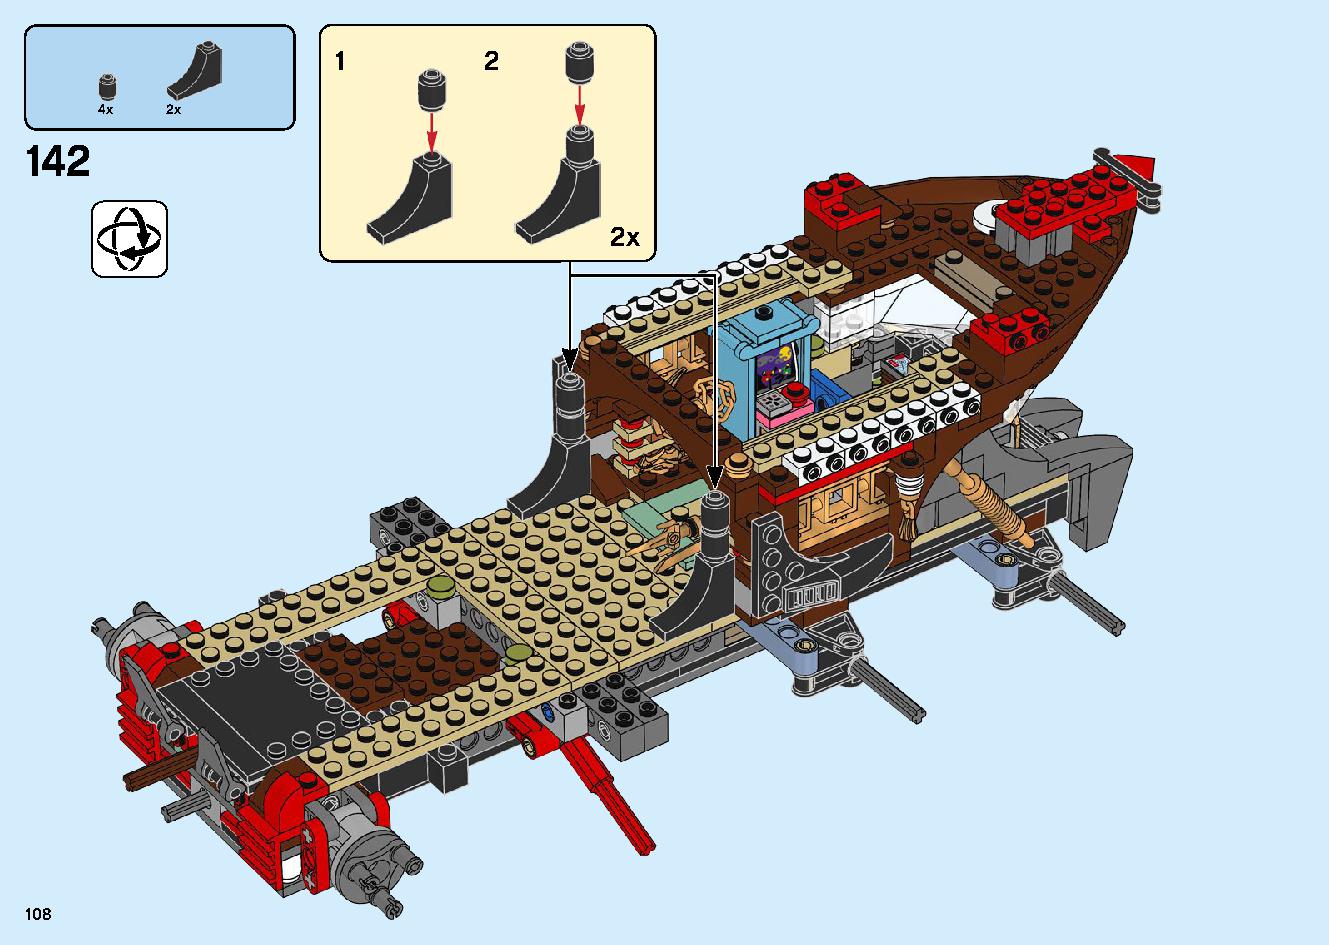 陸上戦艦バウンティ号 70677 レゴの商品情報 レゴの説明書・組立方法 108 page